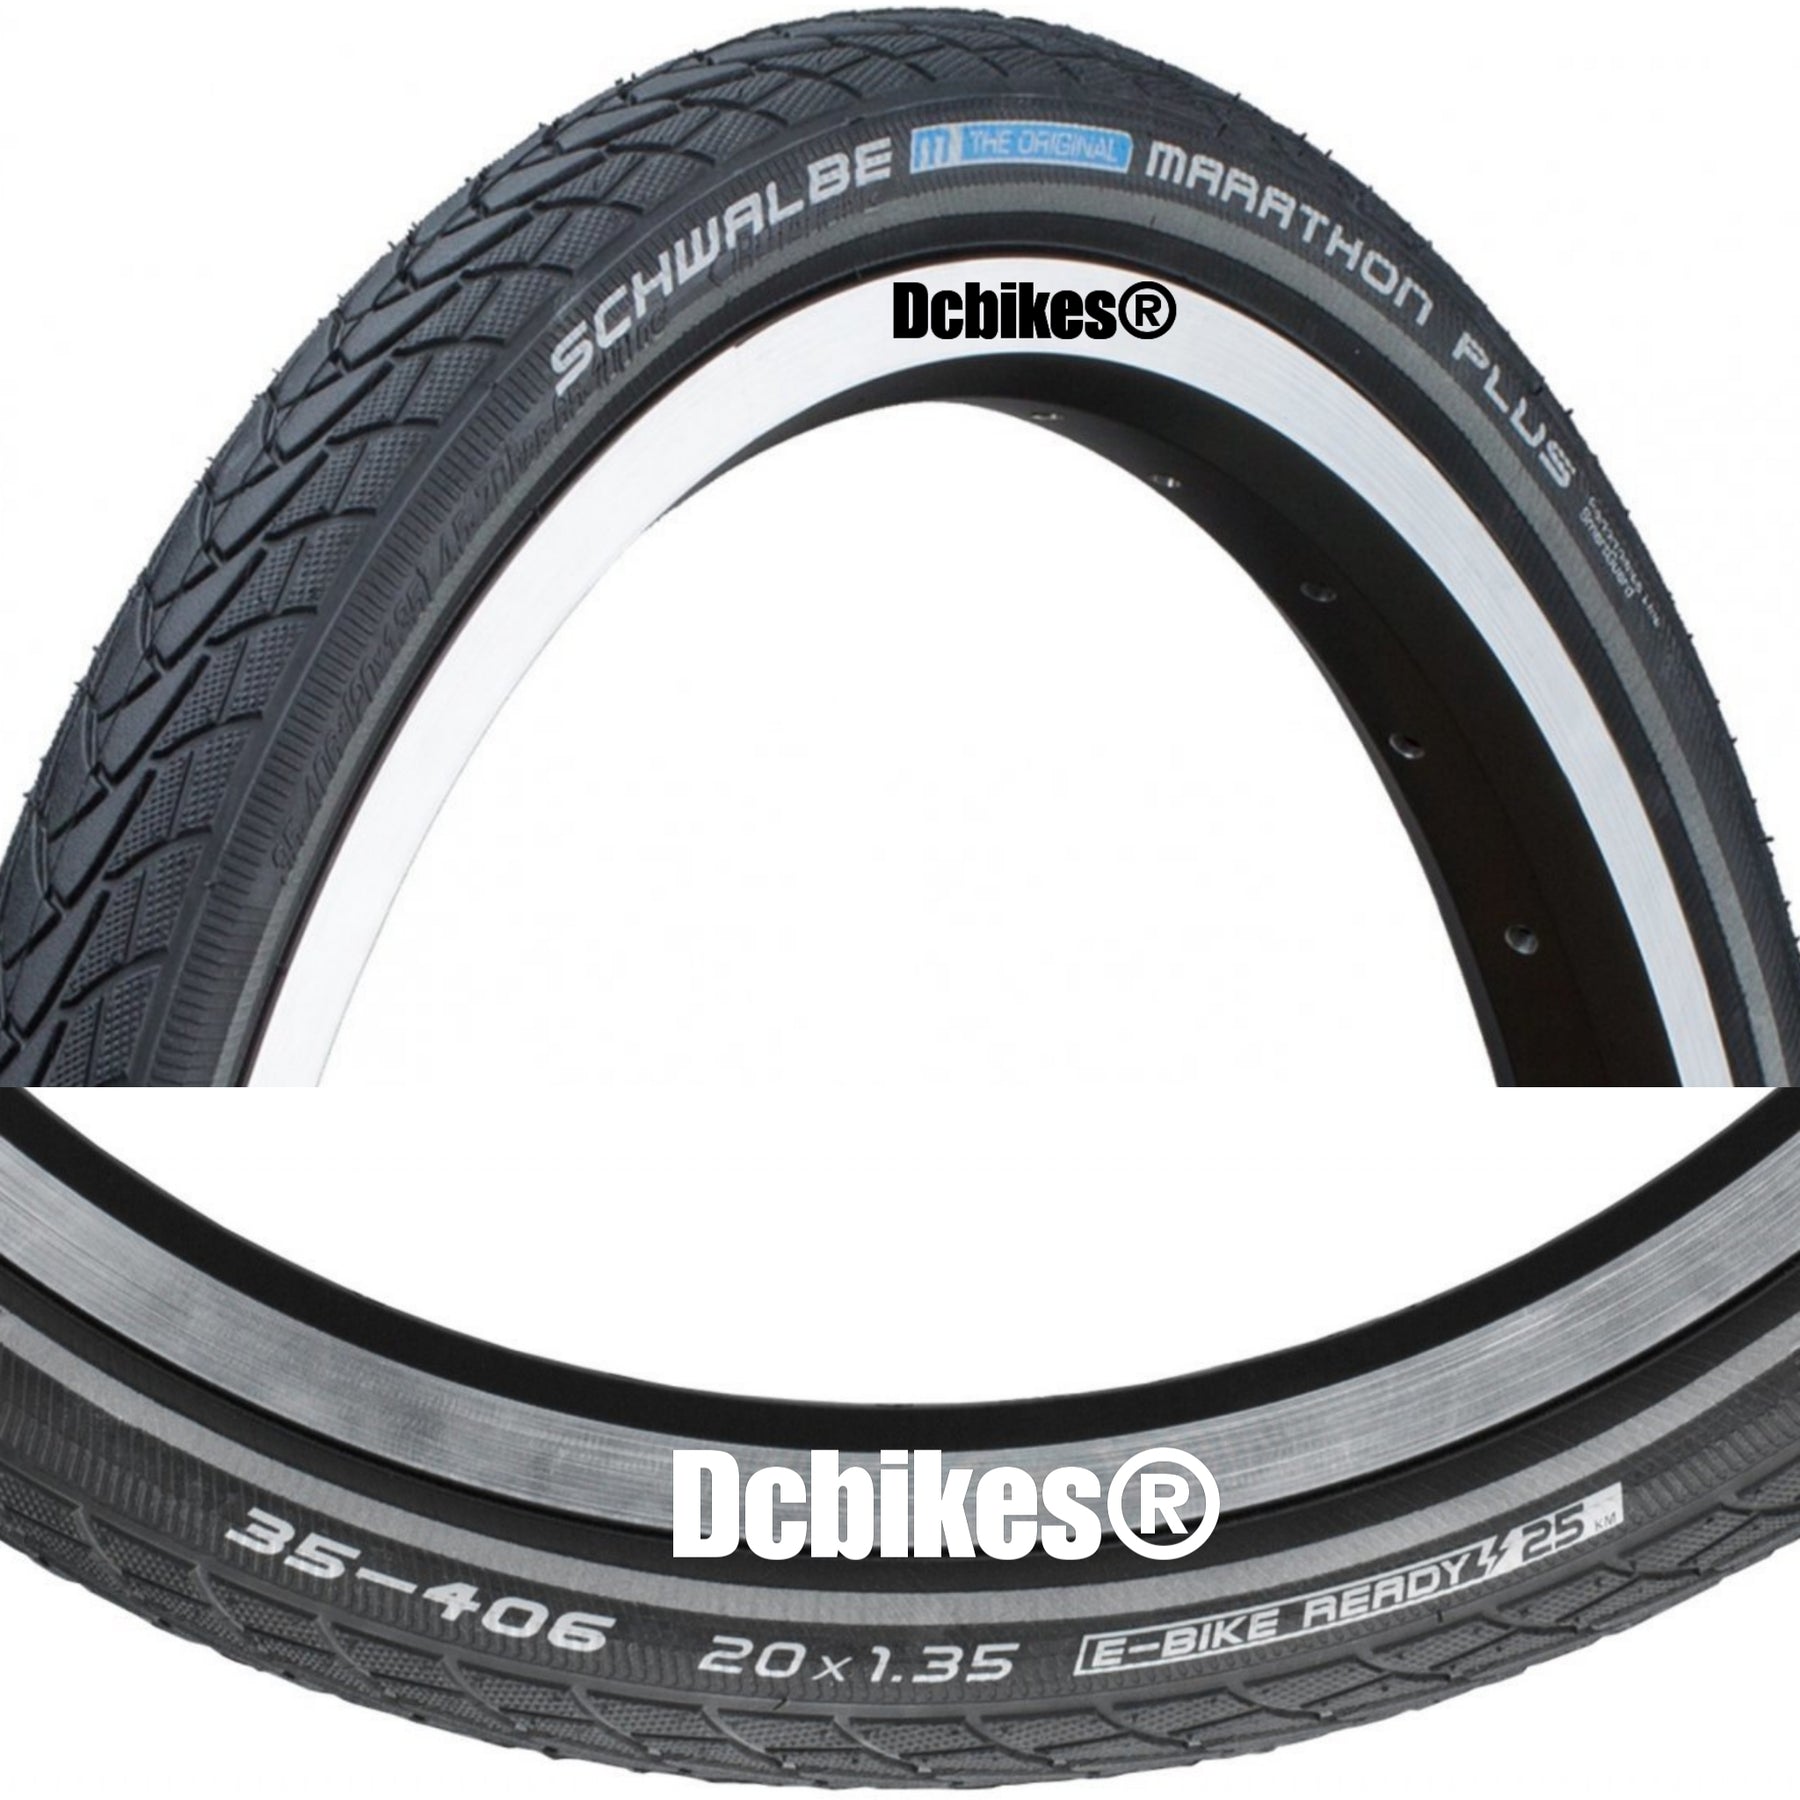 Een centrale tool die een belangrijke rol speelt links Tektonisch Schwalbe 20 X 1.35 Marathon Plus Folding Bike Wired Tyres Etrto: 35-40 –  Dcbikes